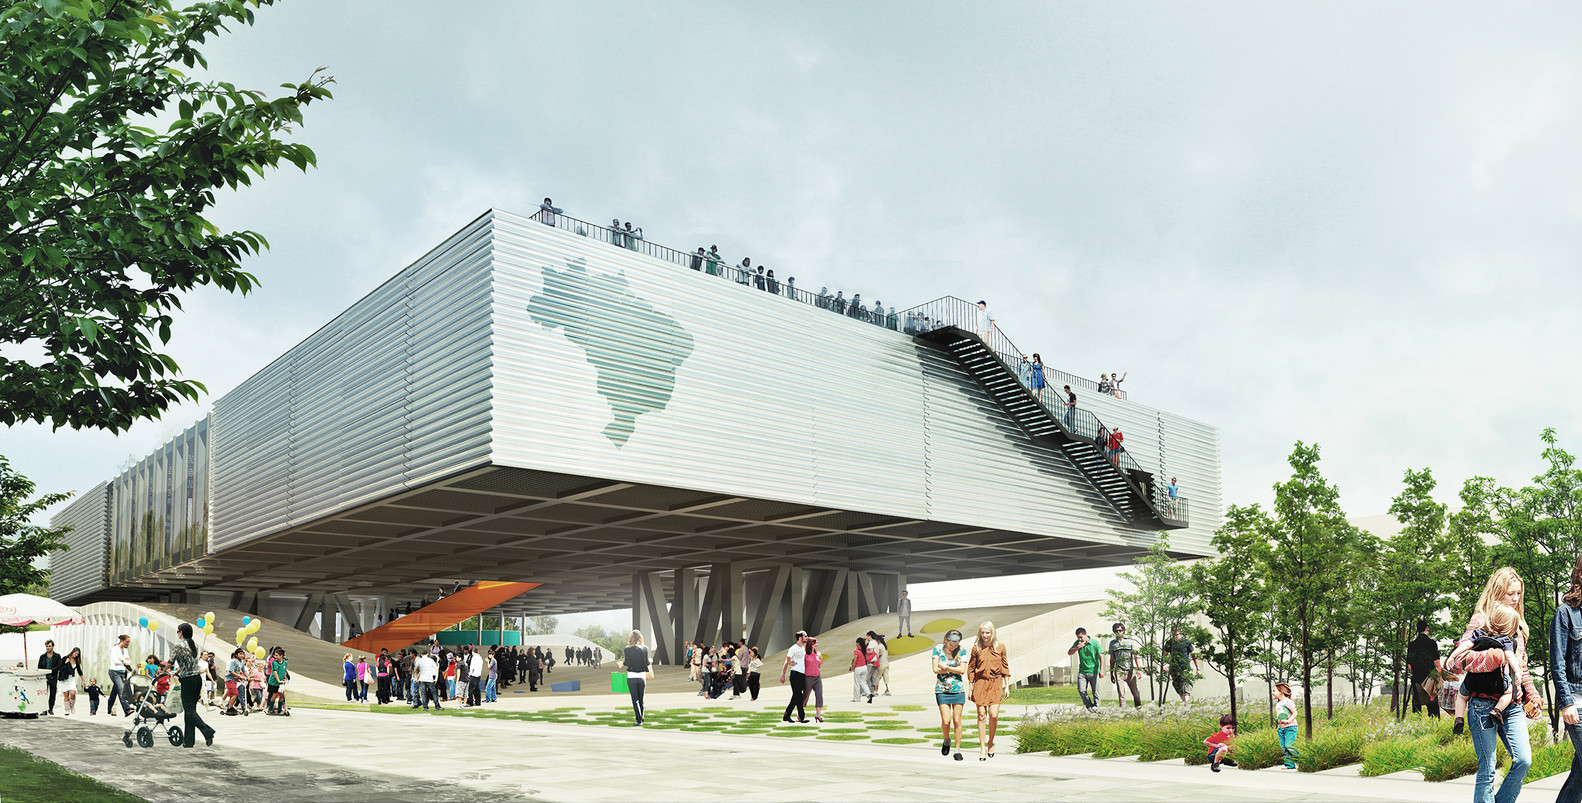 Projeto sugerido, por meio de concurso público, para o pavilhão do Brasil na Expo Milão 2015. Iniciativas abrem espaço para a criatividade e inovação, comenta o professor. / ArchDaily